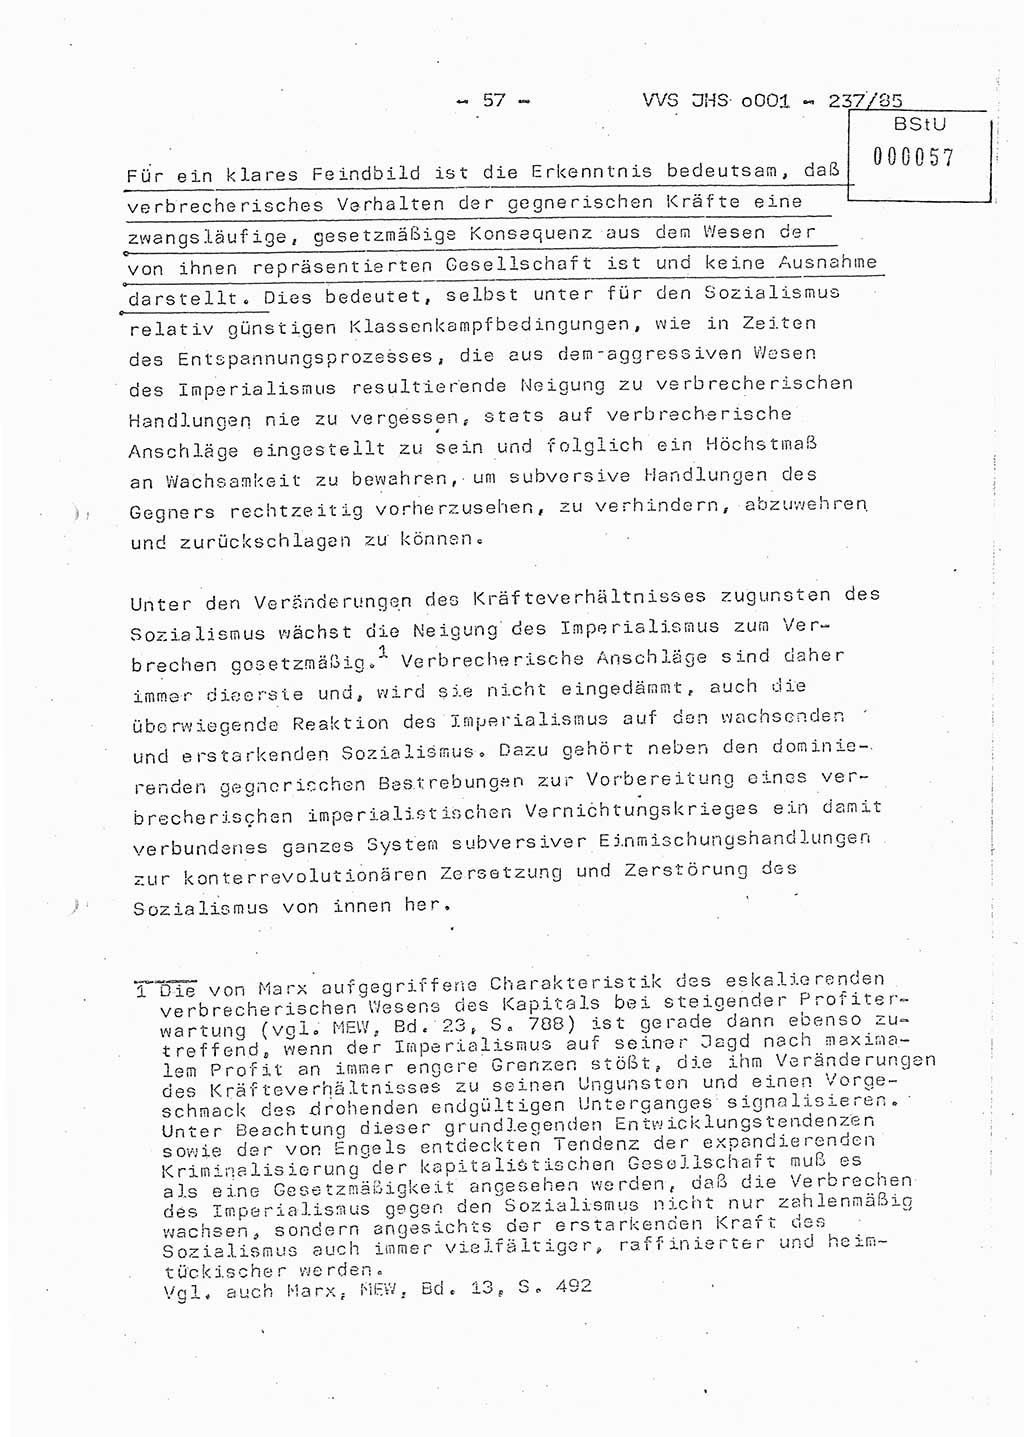 Dissertation Oberstleutnant Peter Jakulski (JHS), Oberstleutnat Christian Rudolph (HA Ⅸ), Major Horst Böttger (ZMD), Major Wolfgang Grüneberg (JHS), Major Albert Meutsch (JHS), Ministerium für Staatssicherheit (MfS) [Deutsche Demokratische Republik (DDR)], Juristische Hochschule (JHS), Vertrauliche Verschlußsache (VVS) o001-237/85, Potsdam 1985, Seite 57 (Diss. MfS DDR JHS VVS o001-237/85 1985, S. 57)